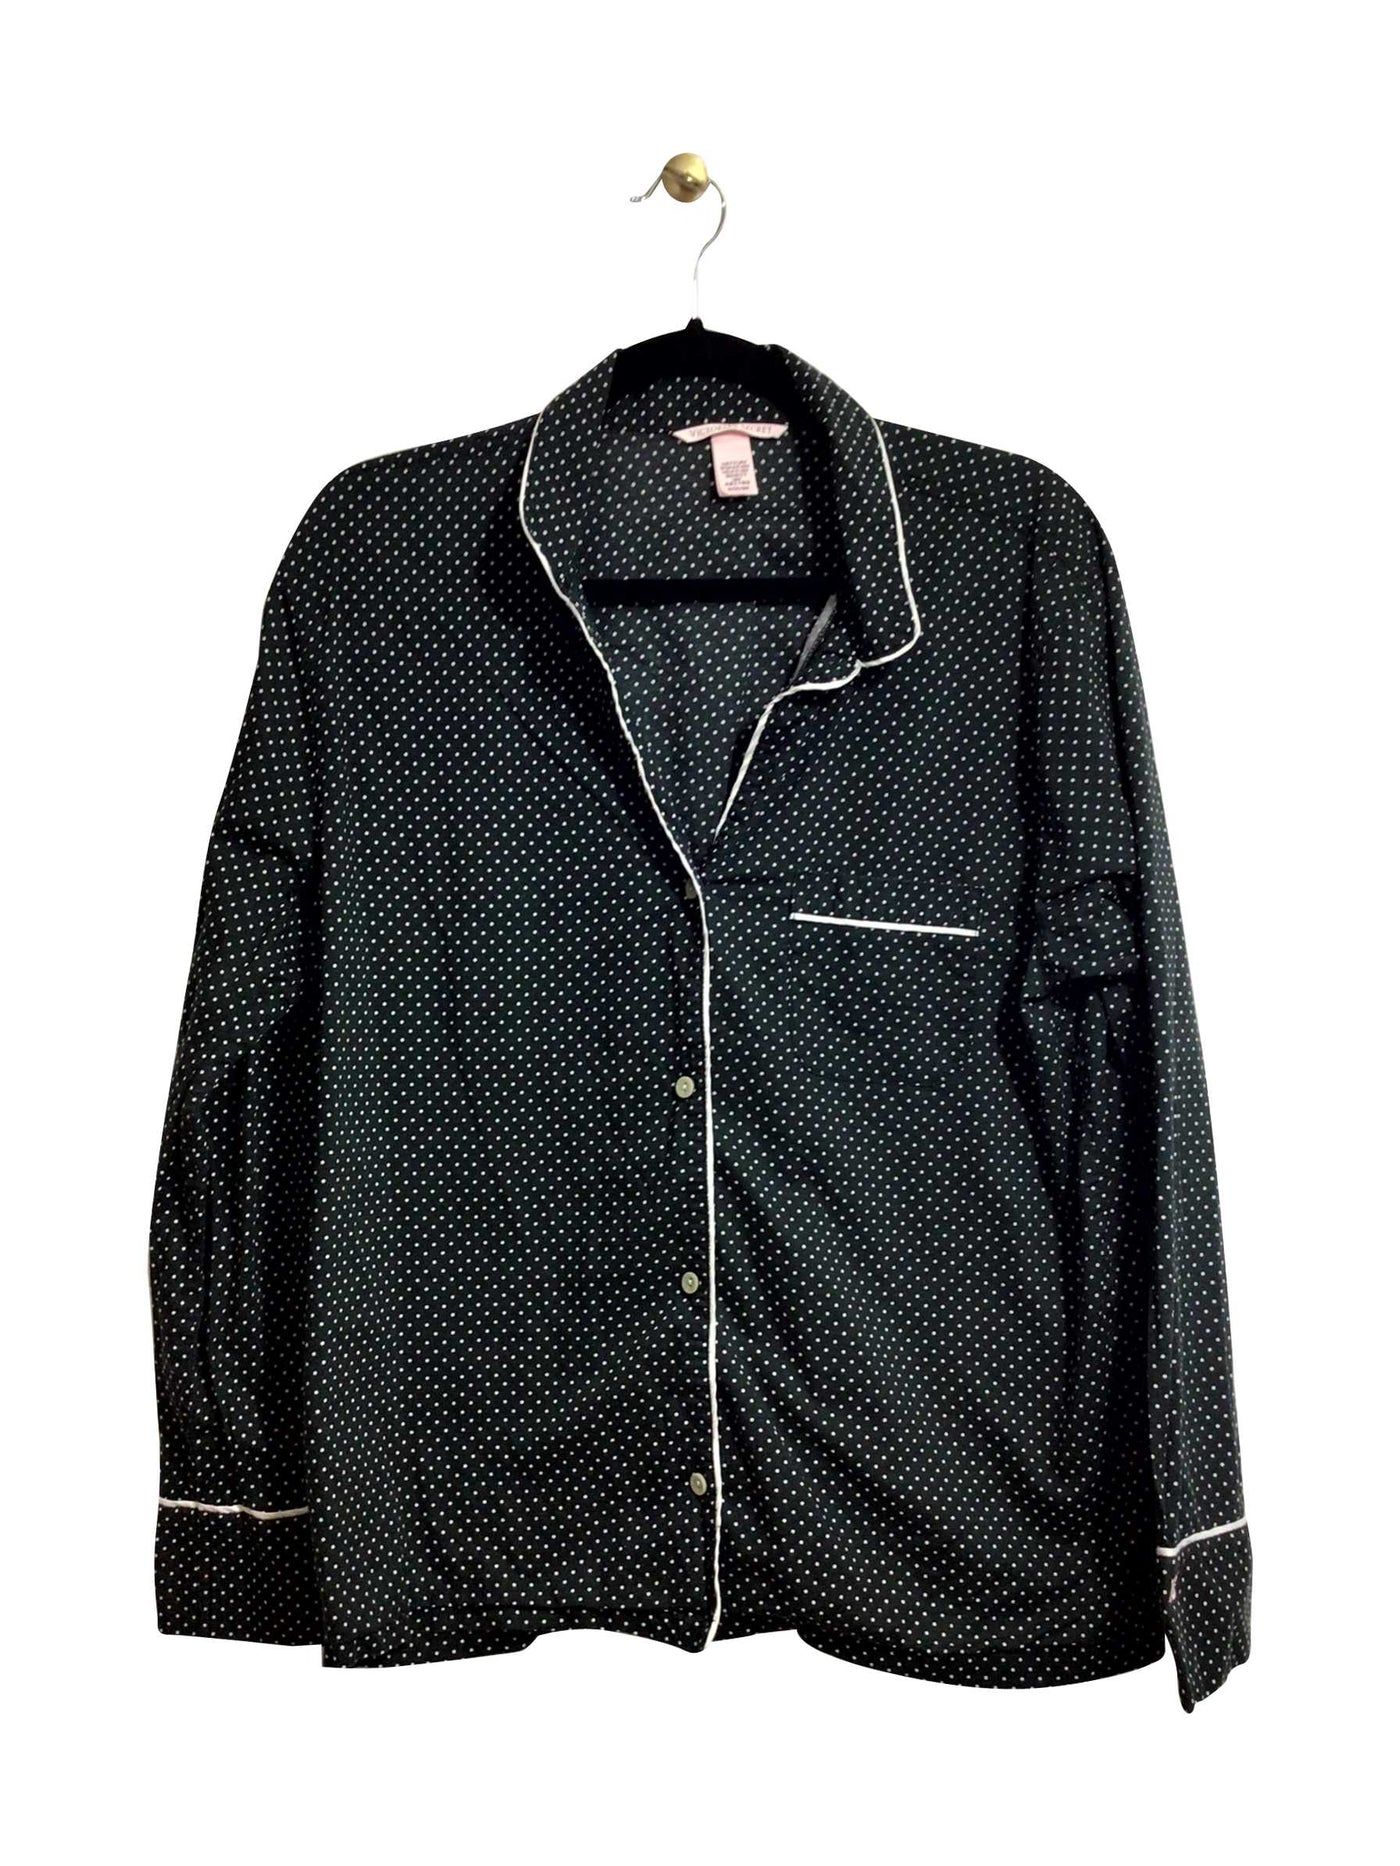 VICTORIA'S SECRET Regular fit Night Wear in Black - Size M | 14.12 $ KOOP